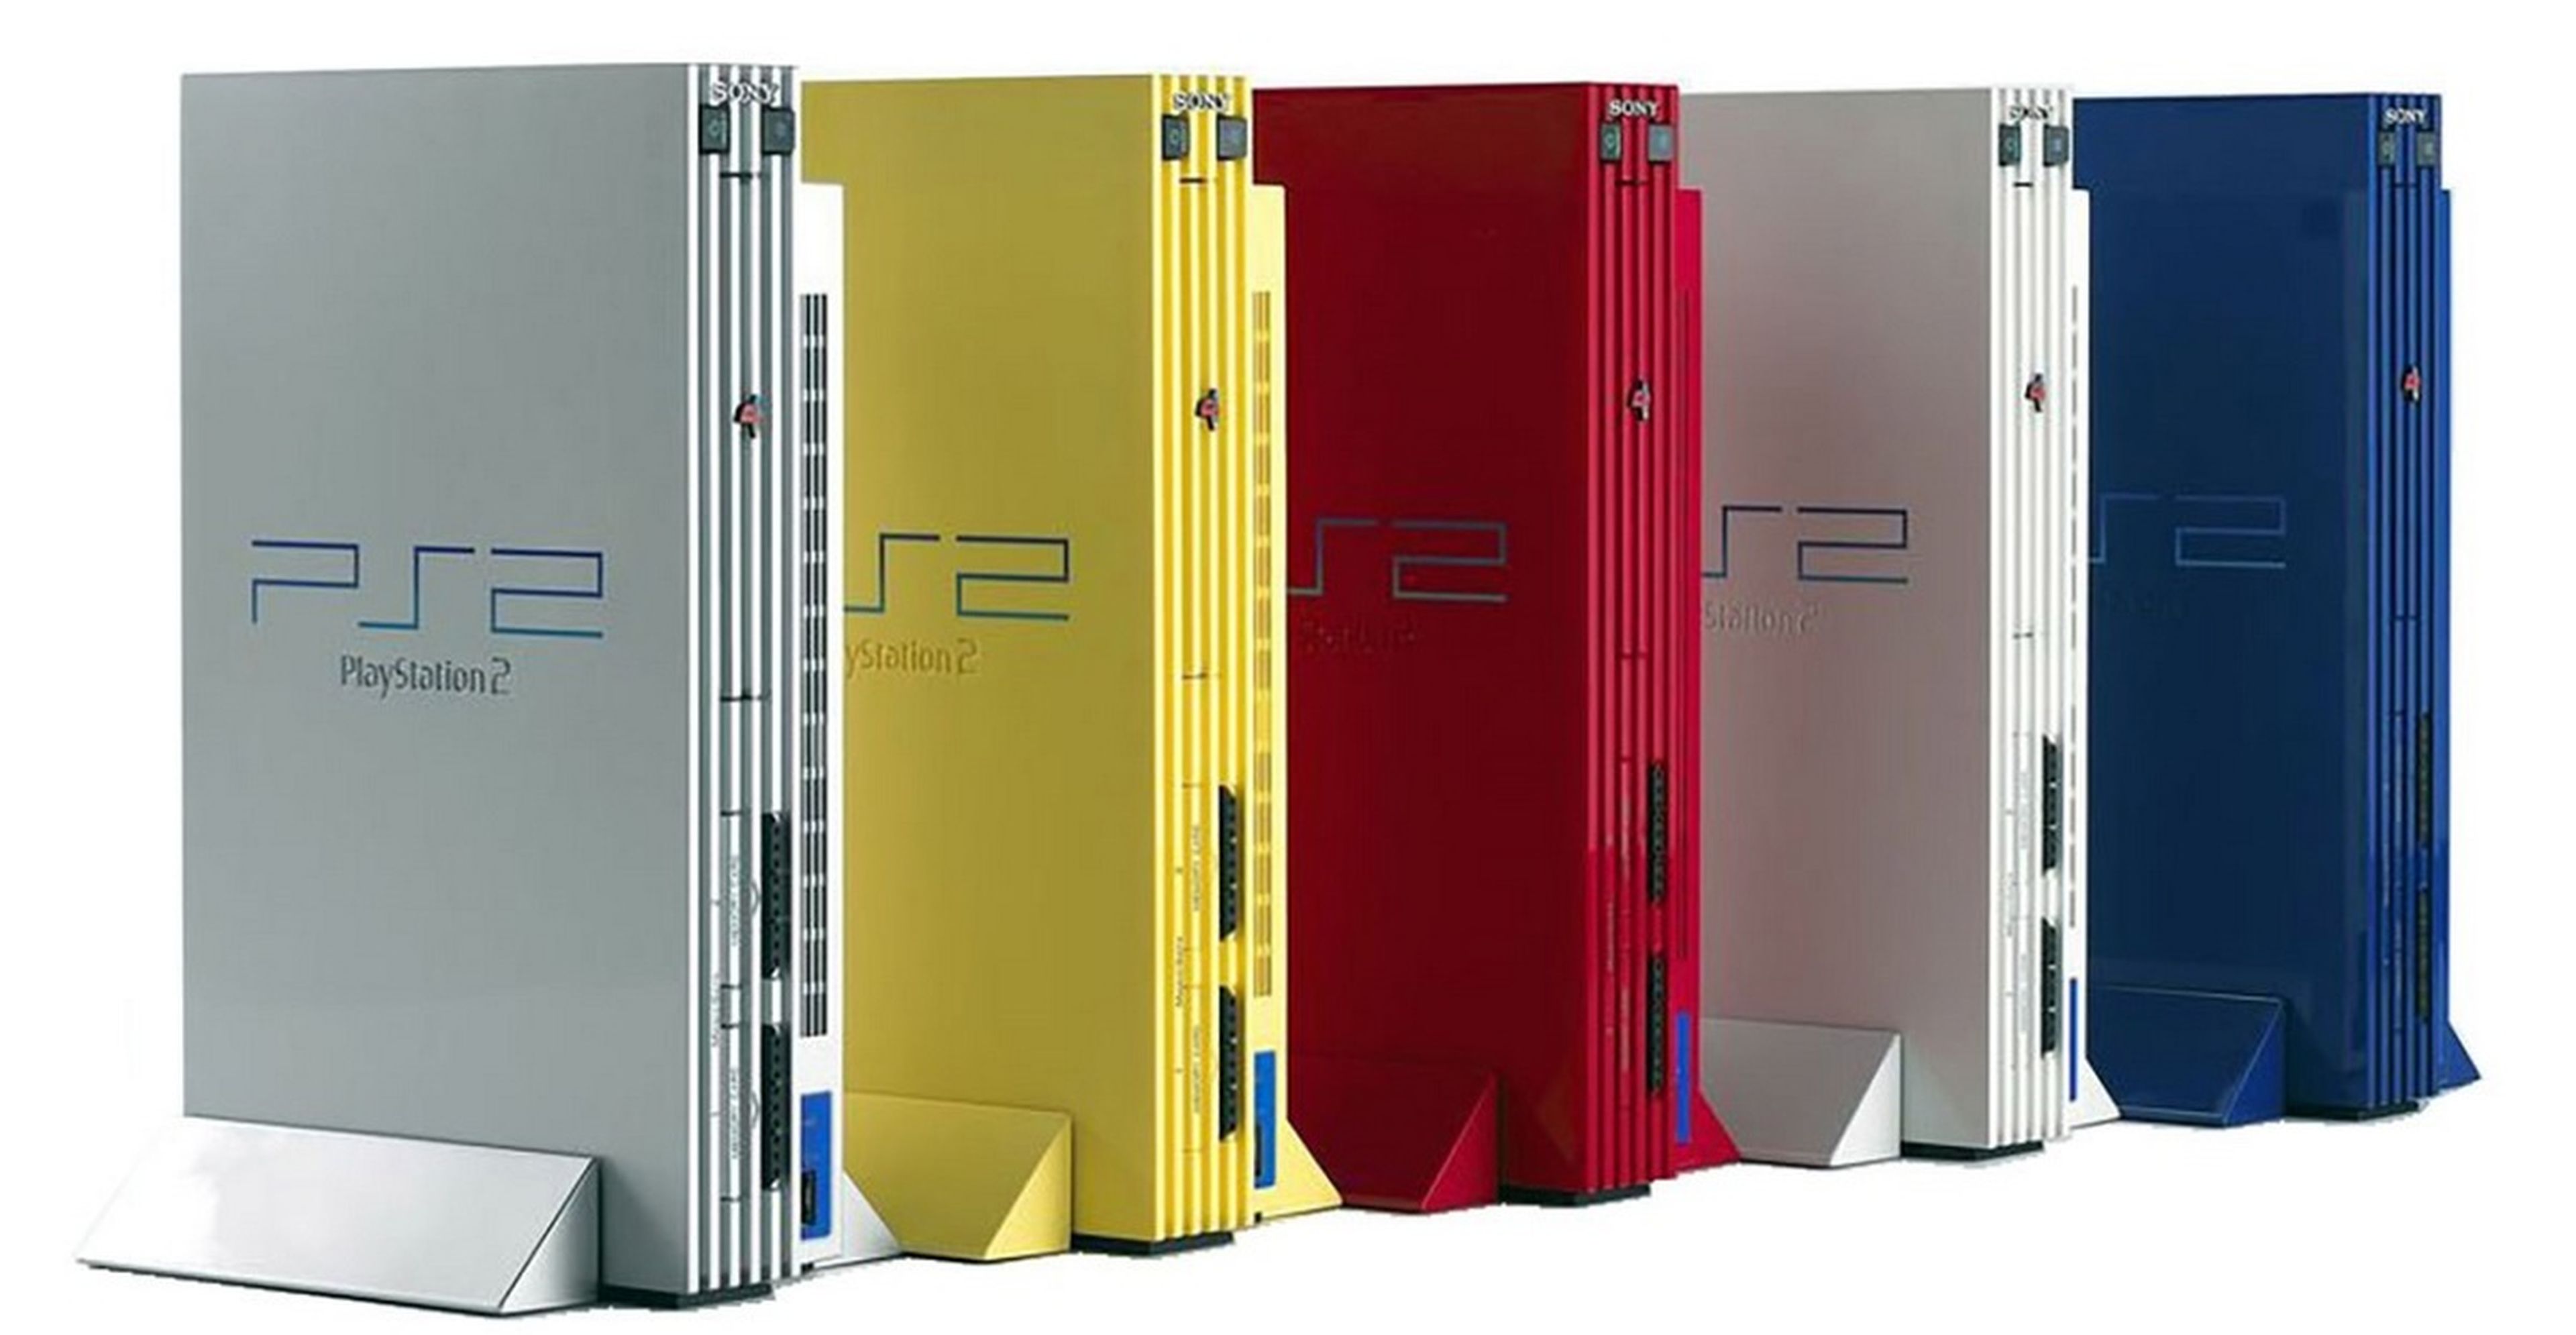 Las consolas PlayStation más espectaculares y raras de la historia